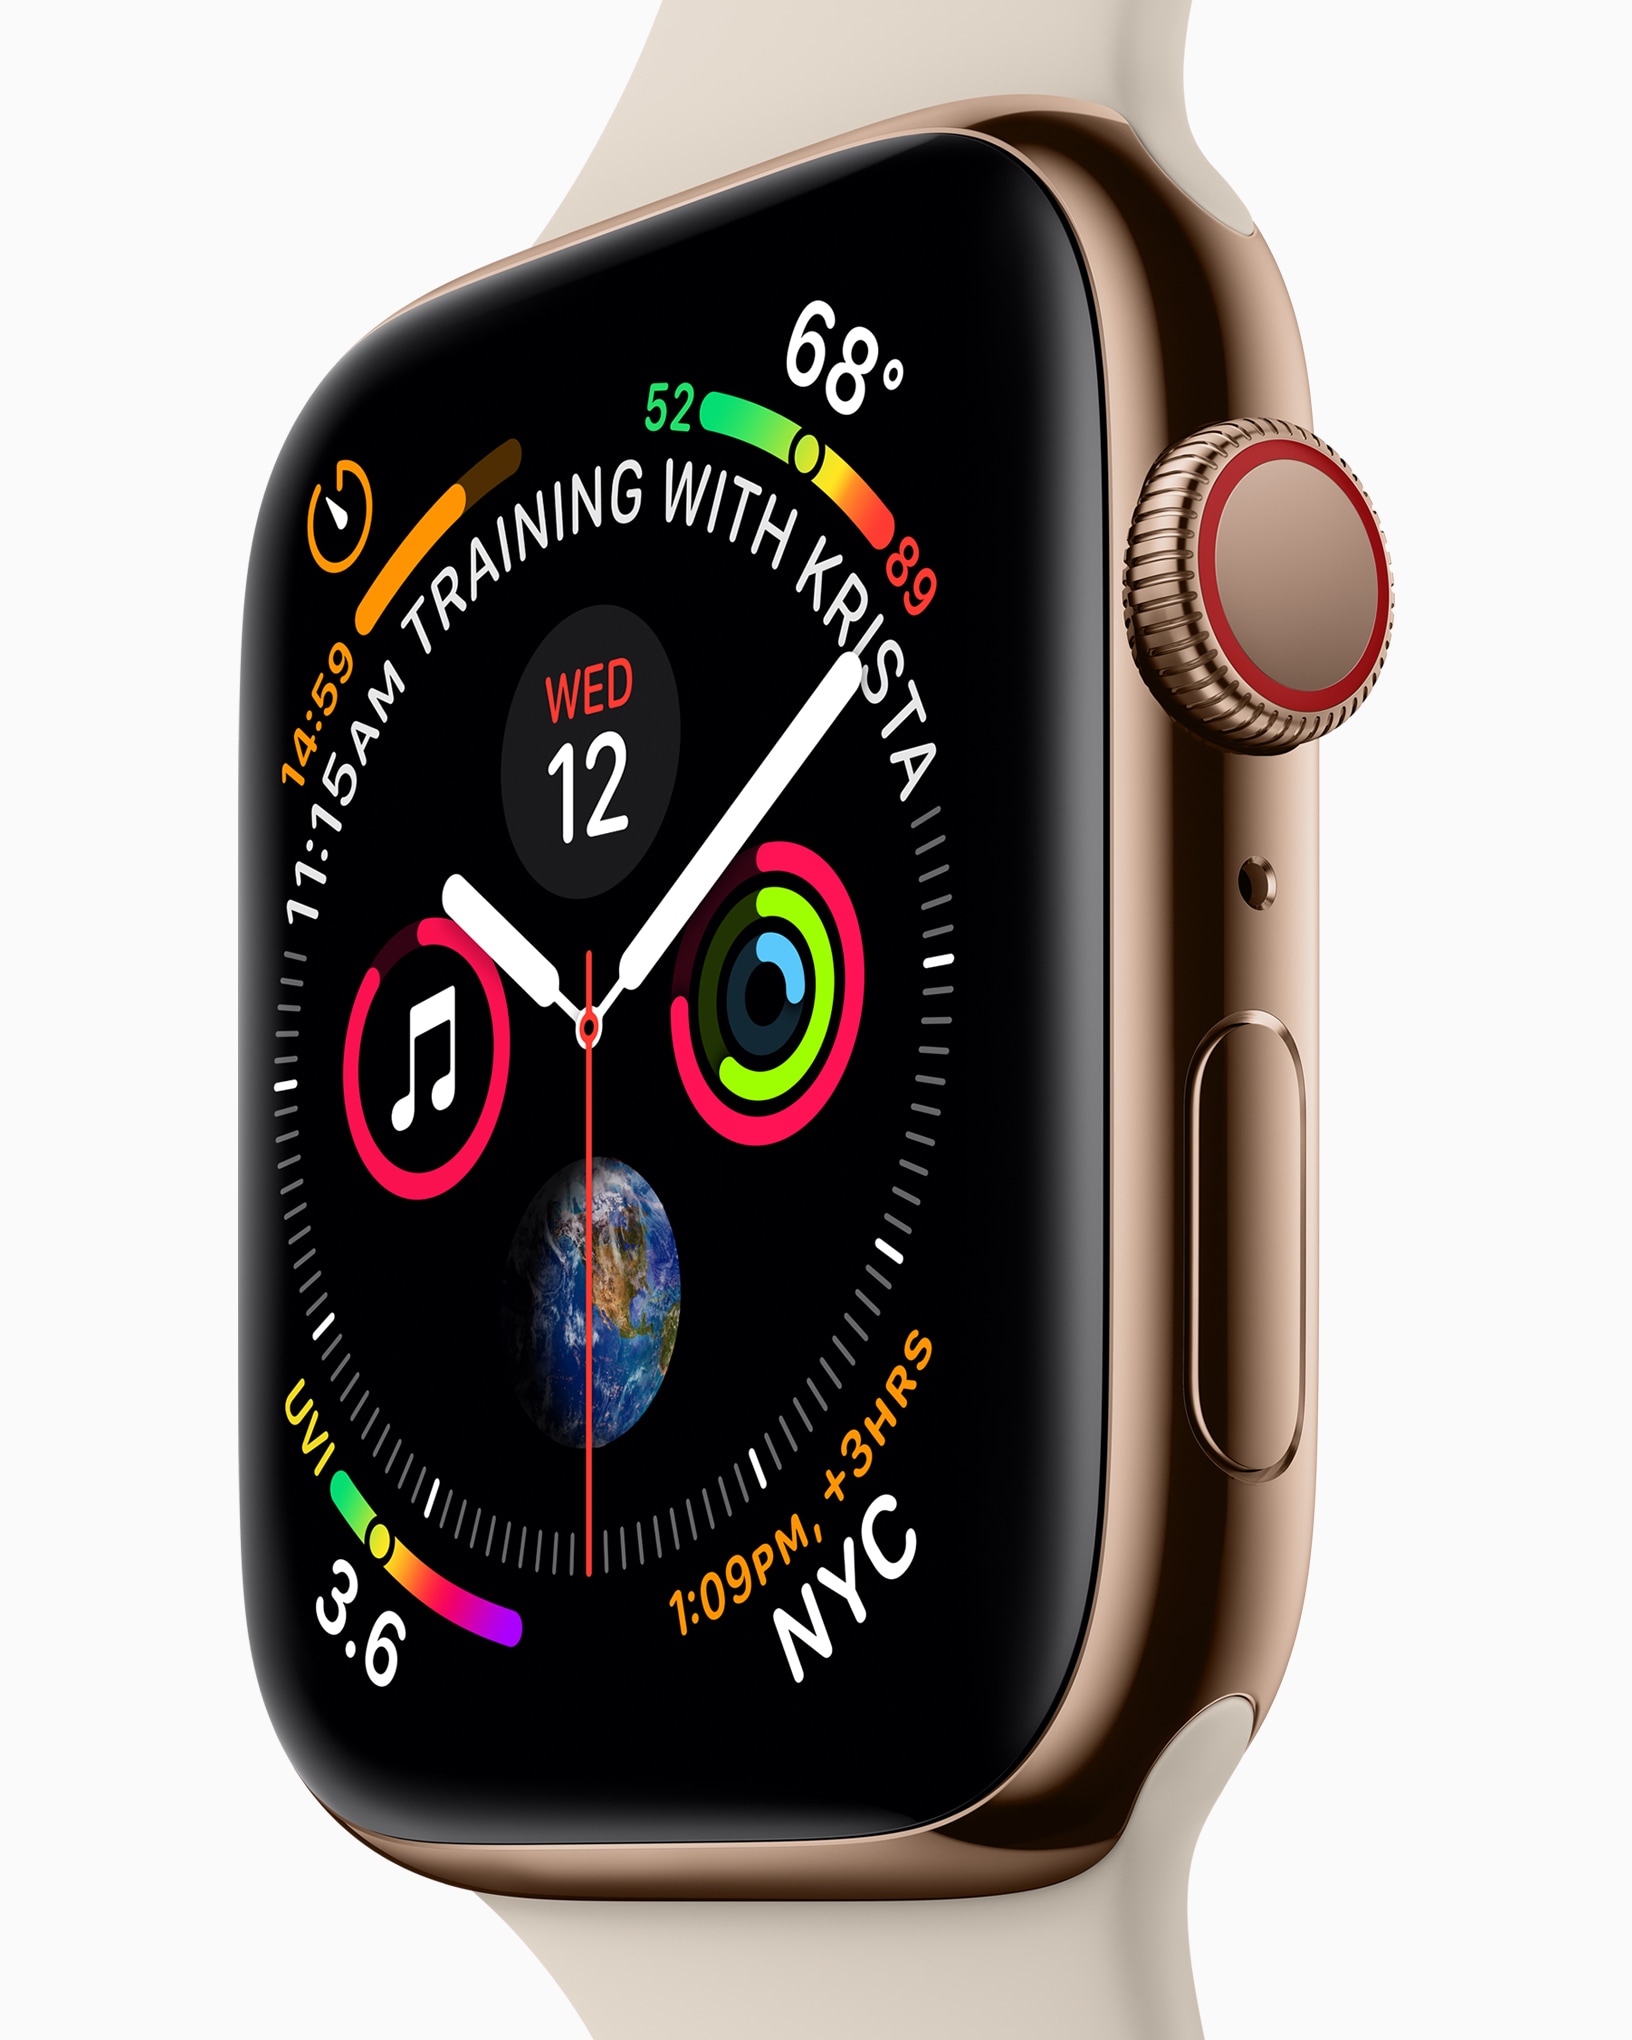 Apple Watch Series 4 täisvalimisnupp koos külgsete komplikatsioonidega